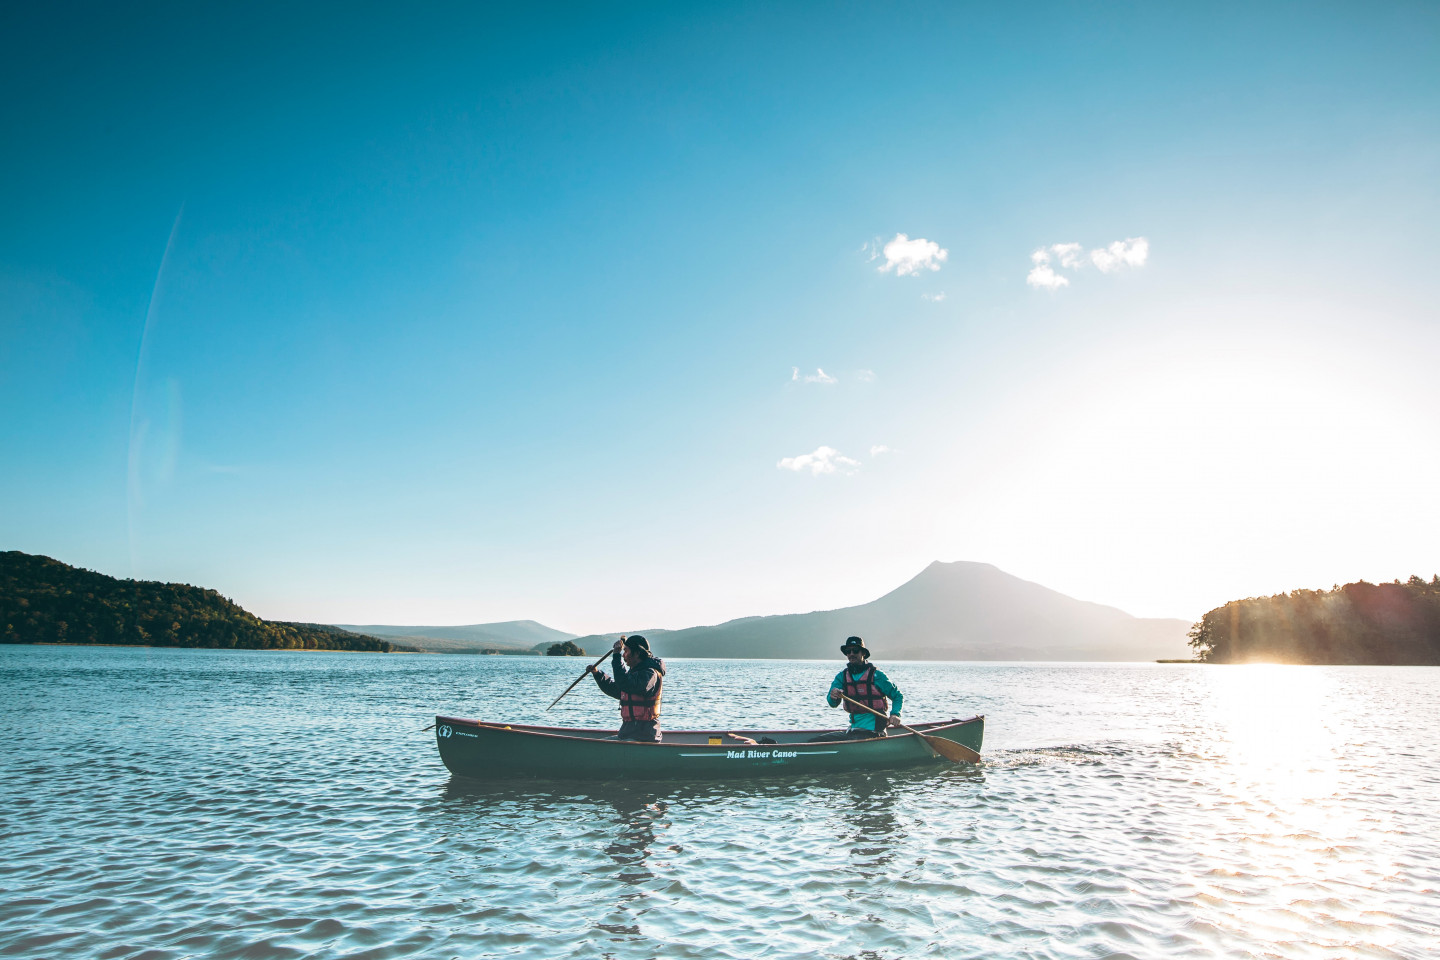 6.「カナディアンカヌー」を漕いで、阿寒湖の大自然を満喫する